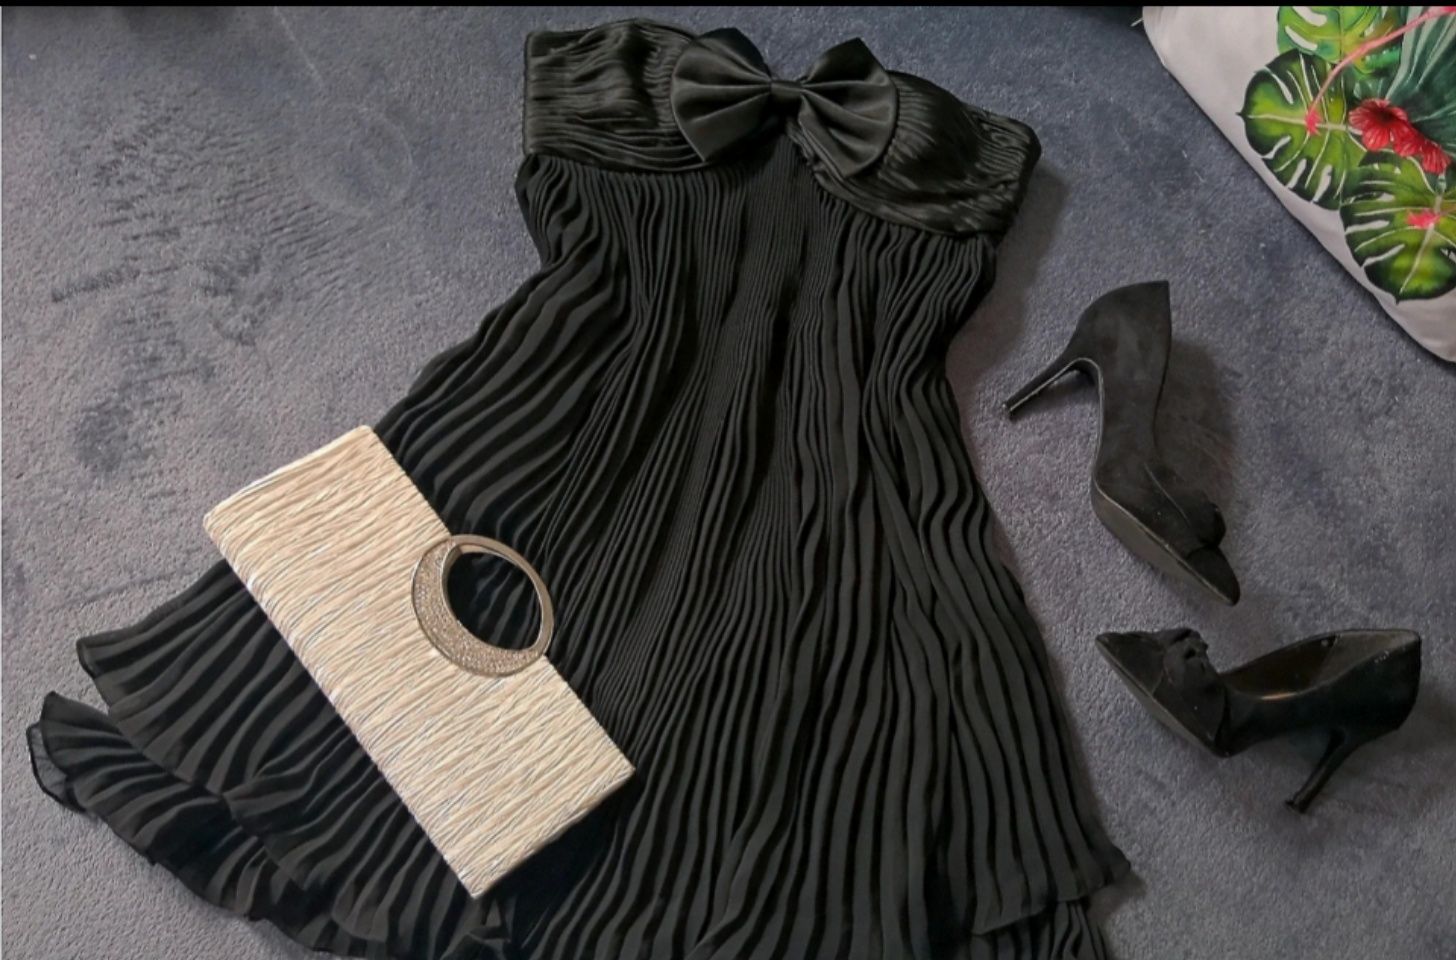 Suknia sukienka plisowana czarna okazja bal wesele ślub kolacja urodzi